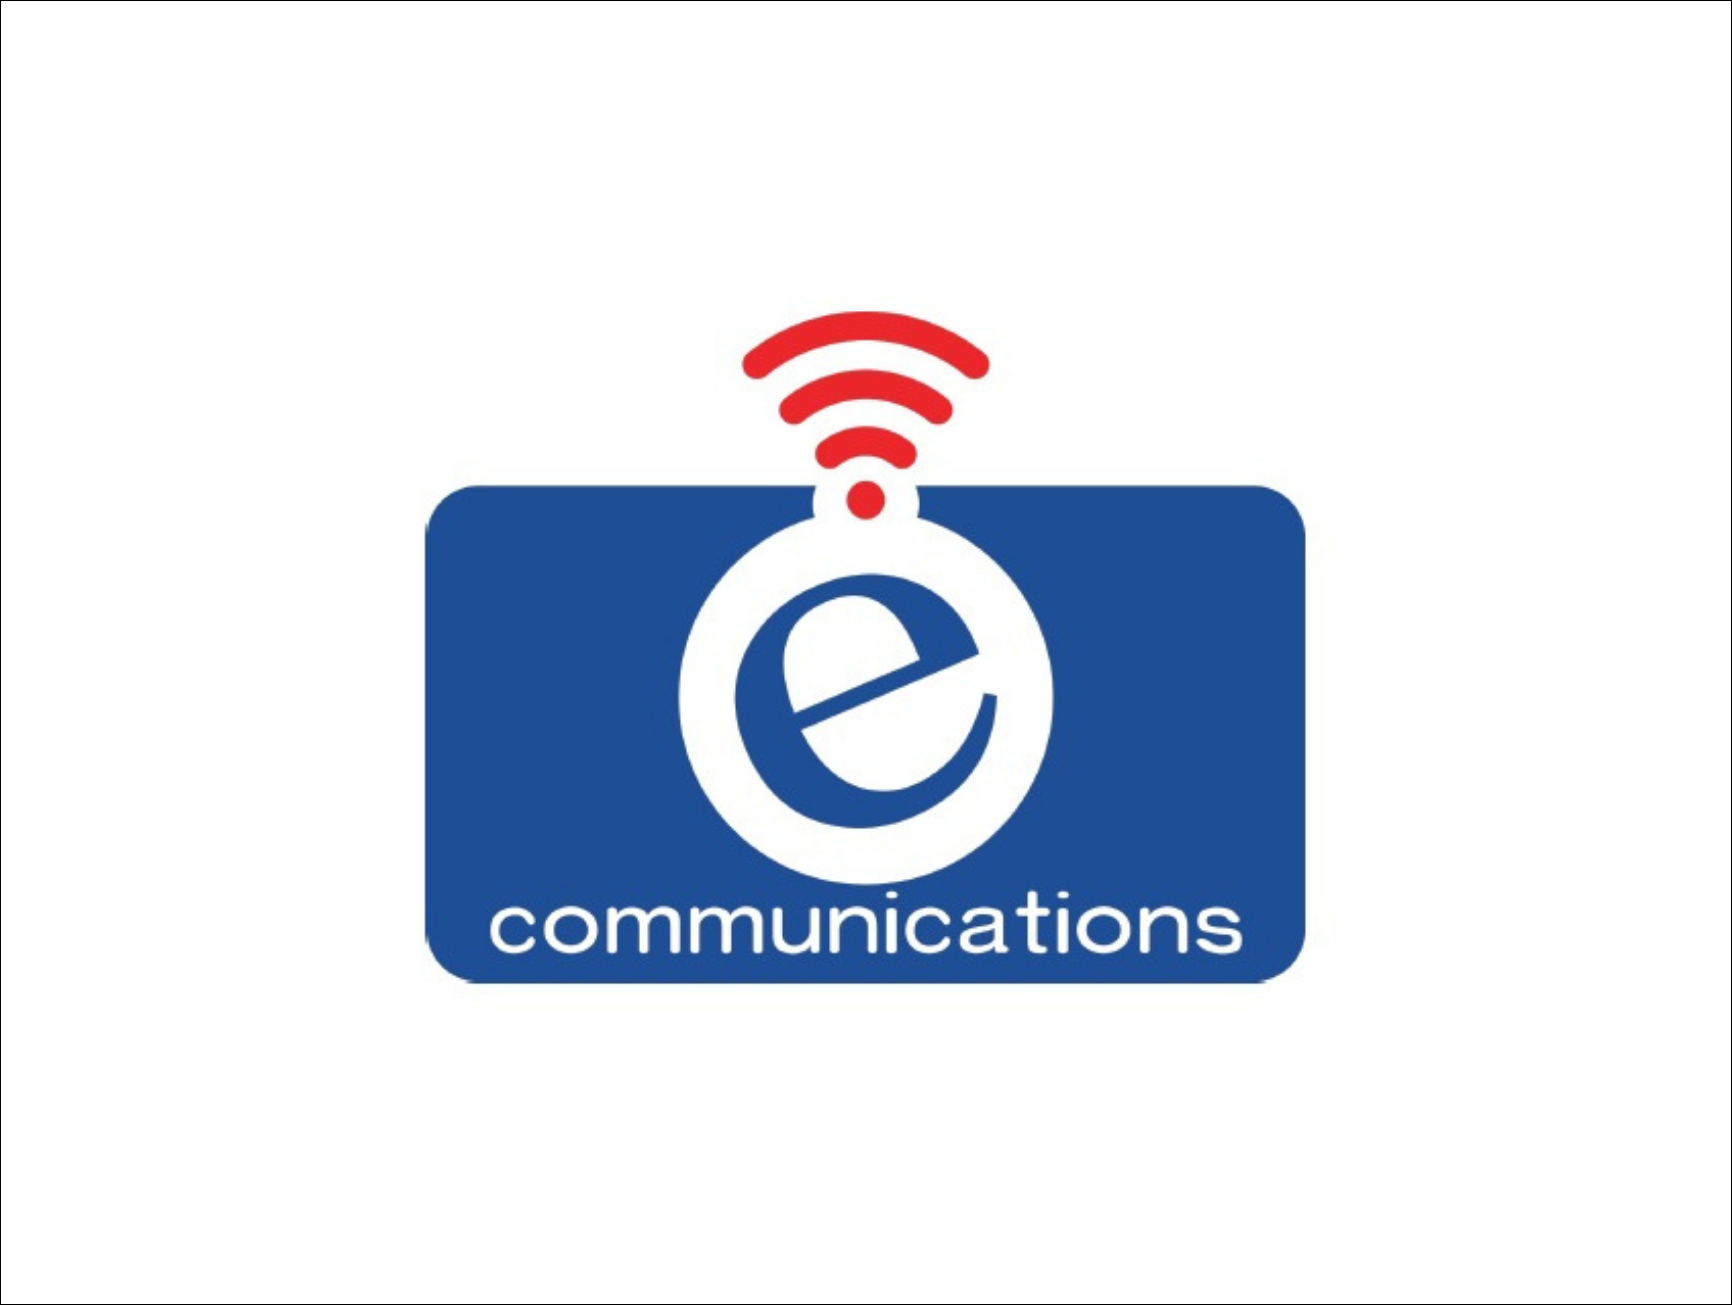 E-Communications